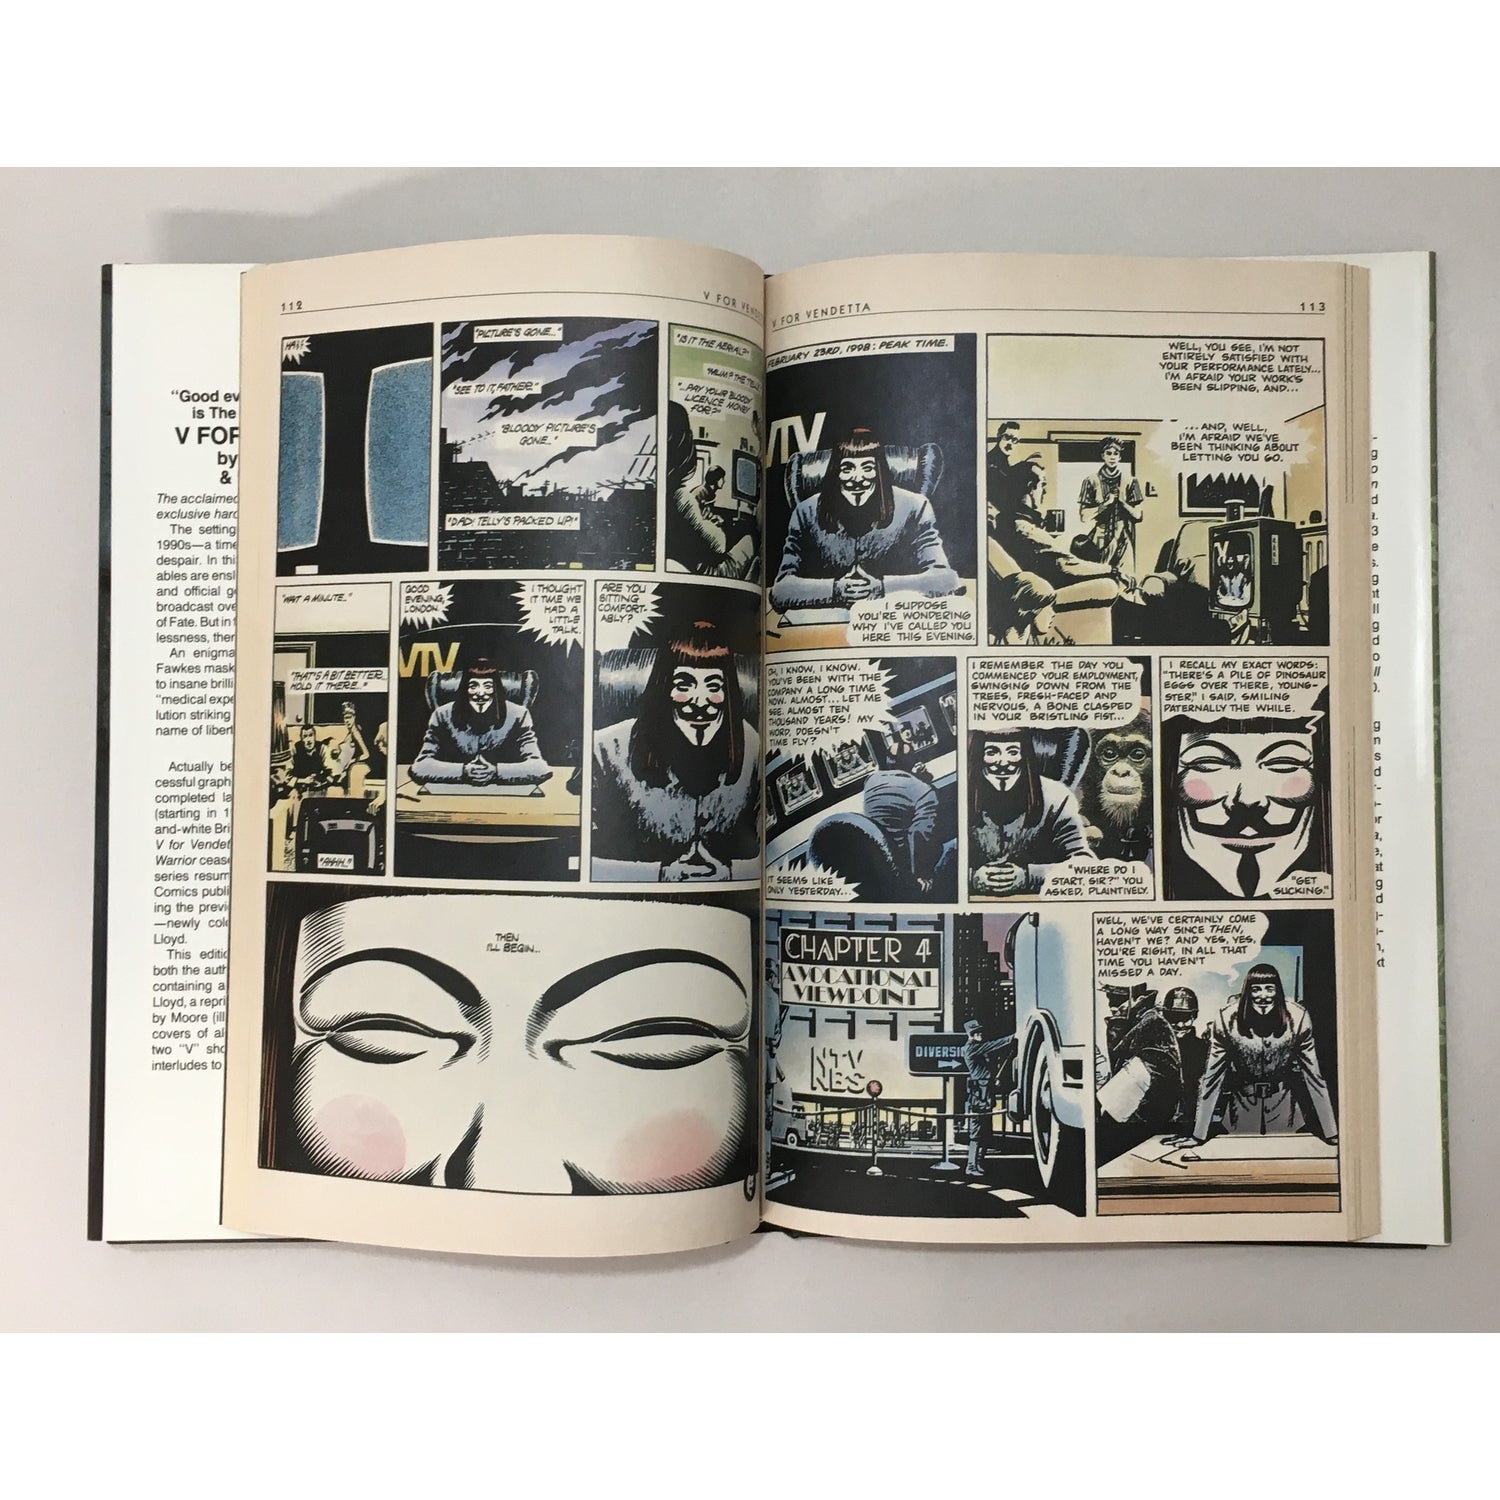 V for Vendetta, Alan Moore, David Lloyd